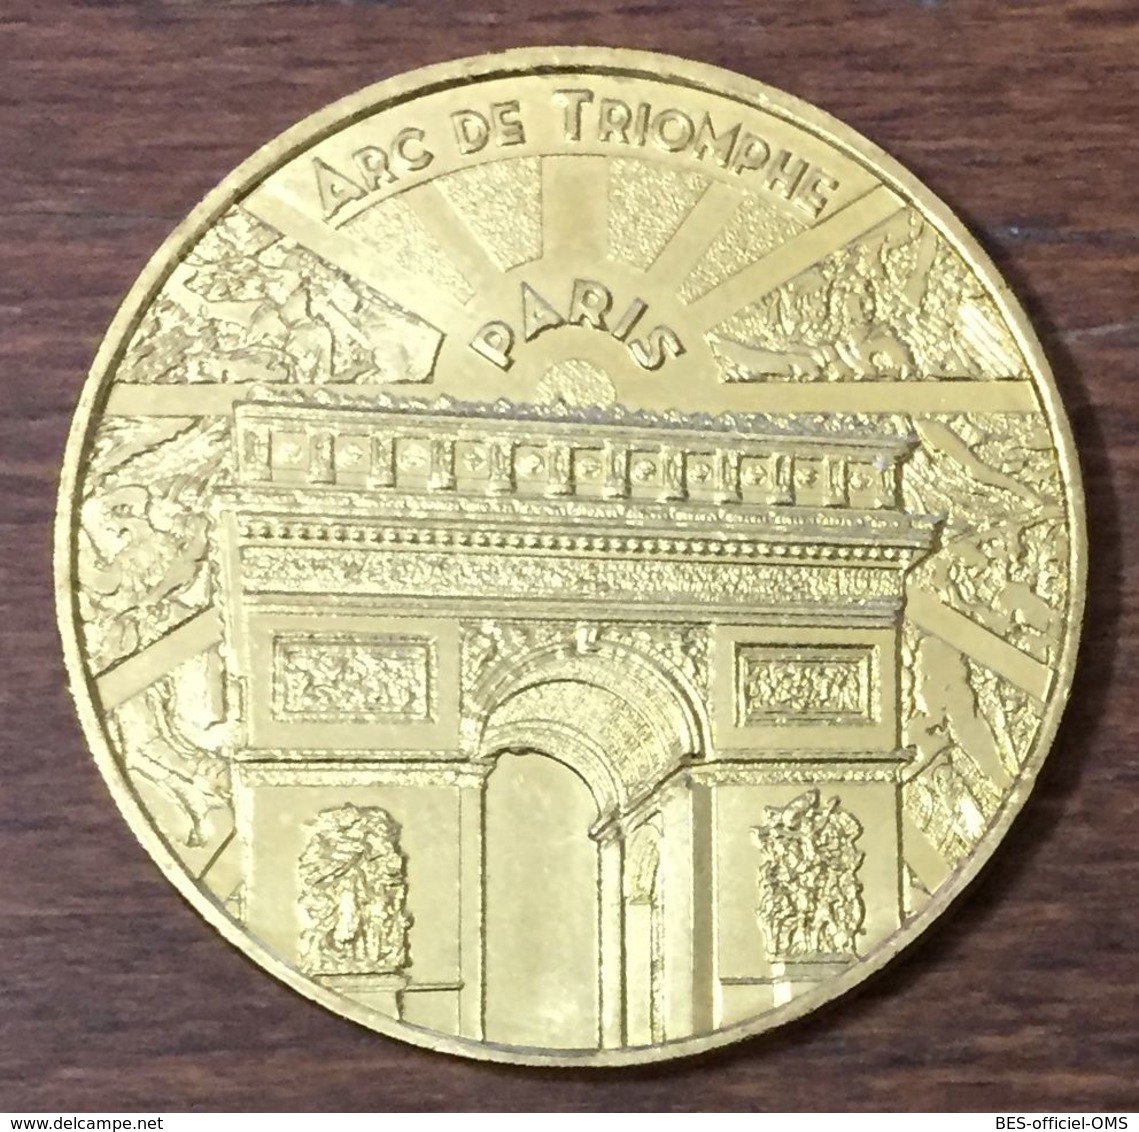 75008 PARIS ARC DE TRIOMPHE MDP 2019 MÉDAILLE SOUVENIR MONNAIE DE PARIS JETON TOURISTIQUE MEDALS COINS TOKENS - 2019